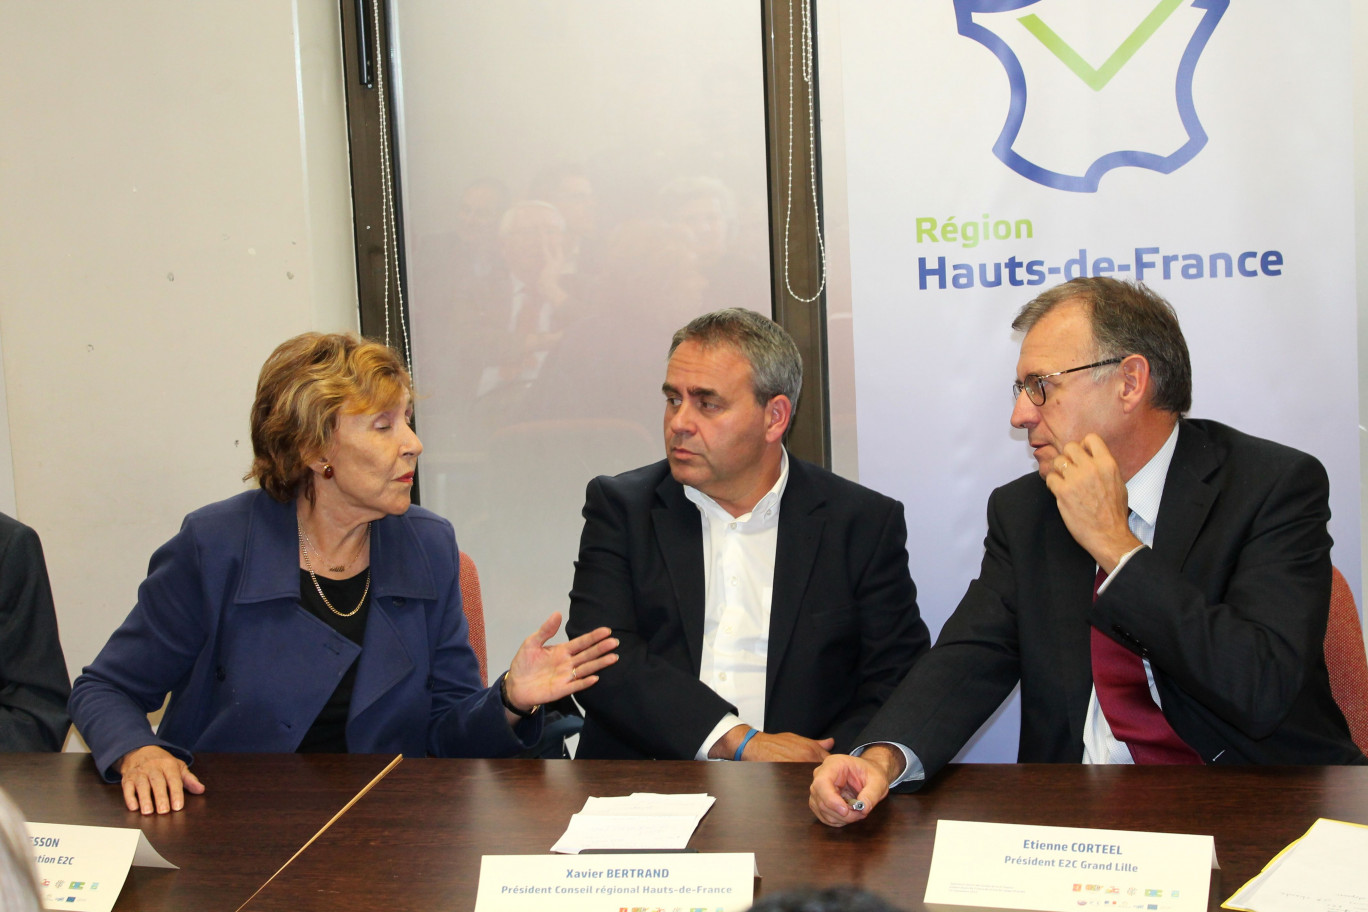 Edith Cresson et Xavier Bertrand ont assisté à la signature de la charte des E2C régionales, dans les locaux de l'E2C grand-Lille, présidée par Etienne Corteel. 